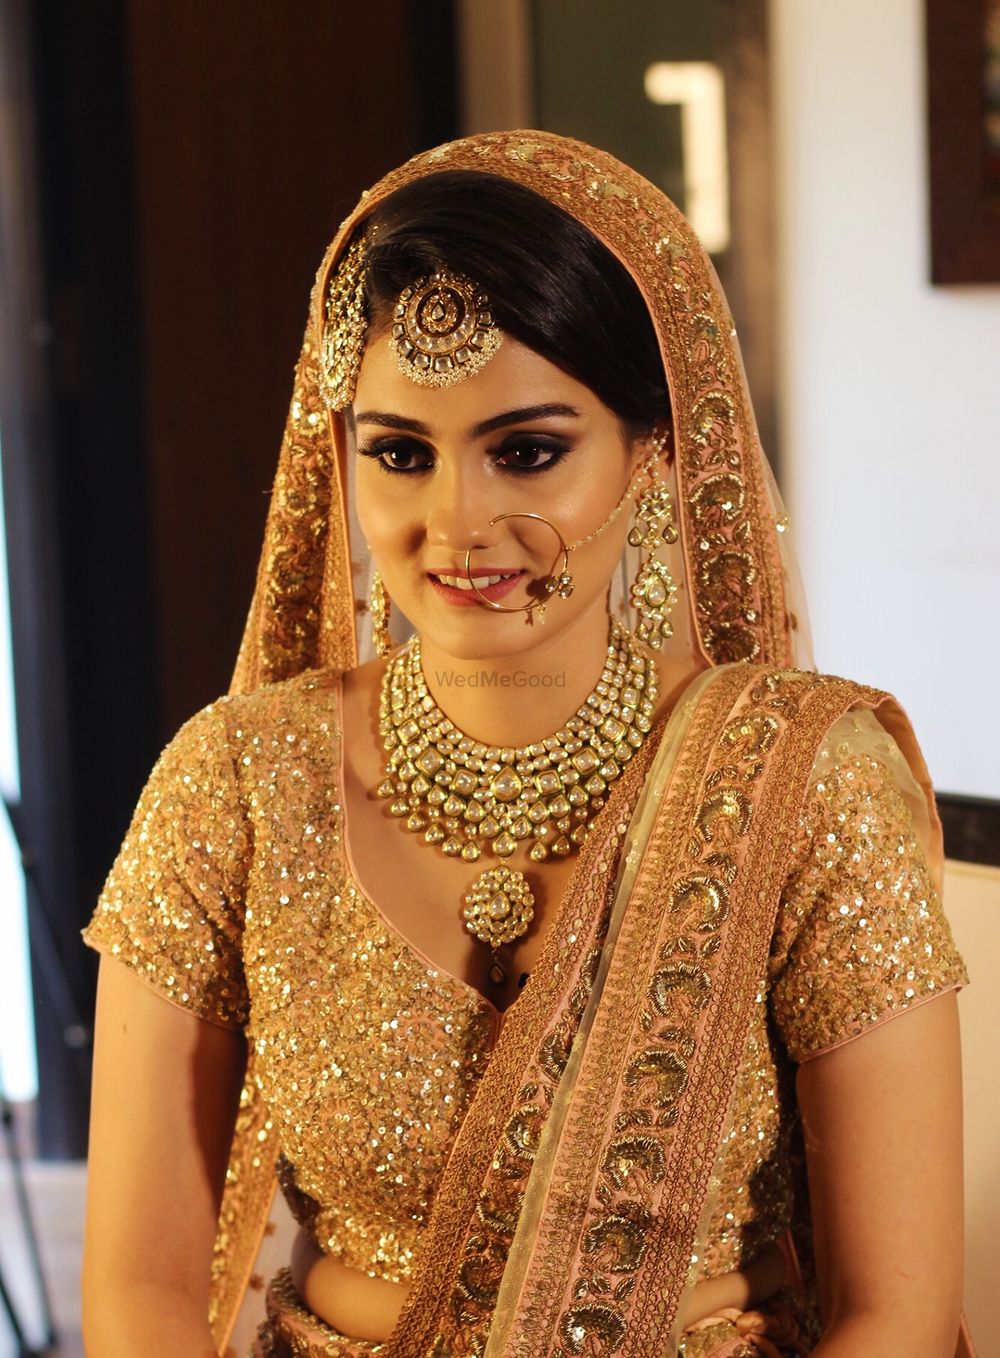 Photo of Gold bridal lehenga